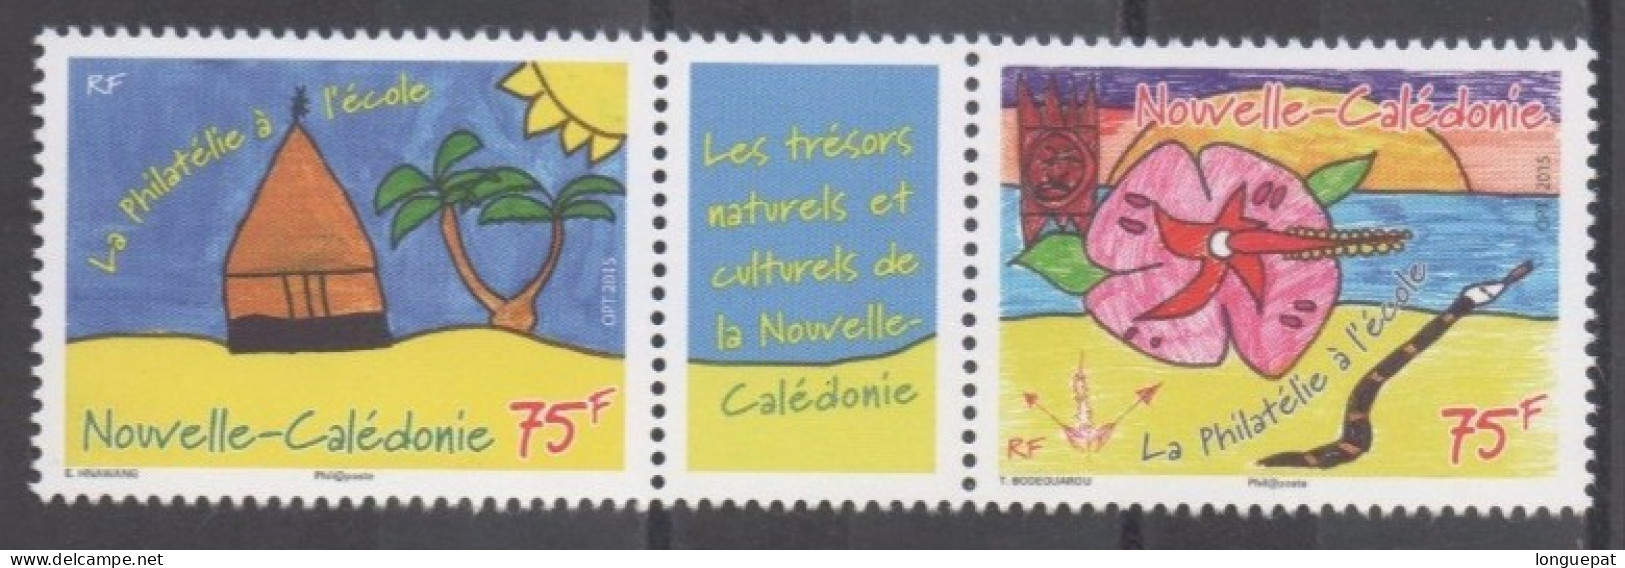 Nelle CALEDONIE - Philatélie à L'école : Dessins D'enfants - - Unused Stamps